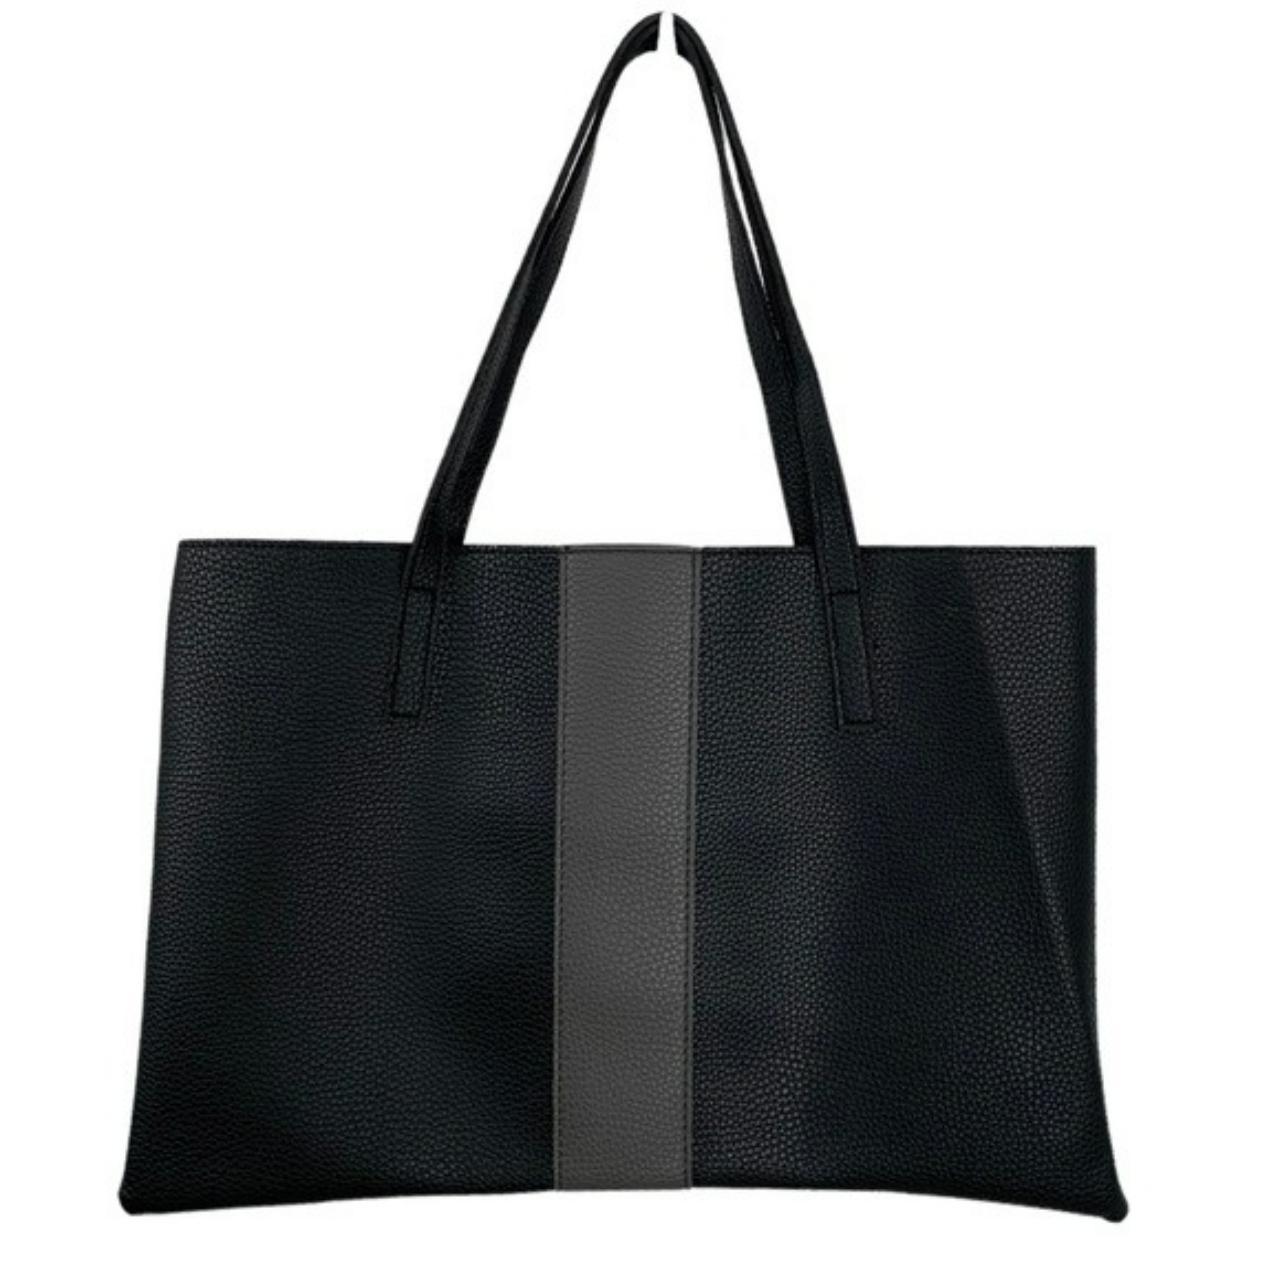 Vince Comuto Vegan Leather Bag Solid Black... - Depop